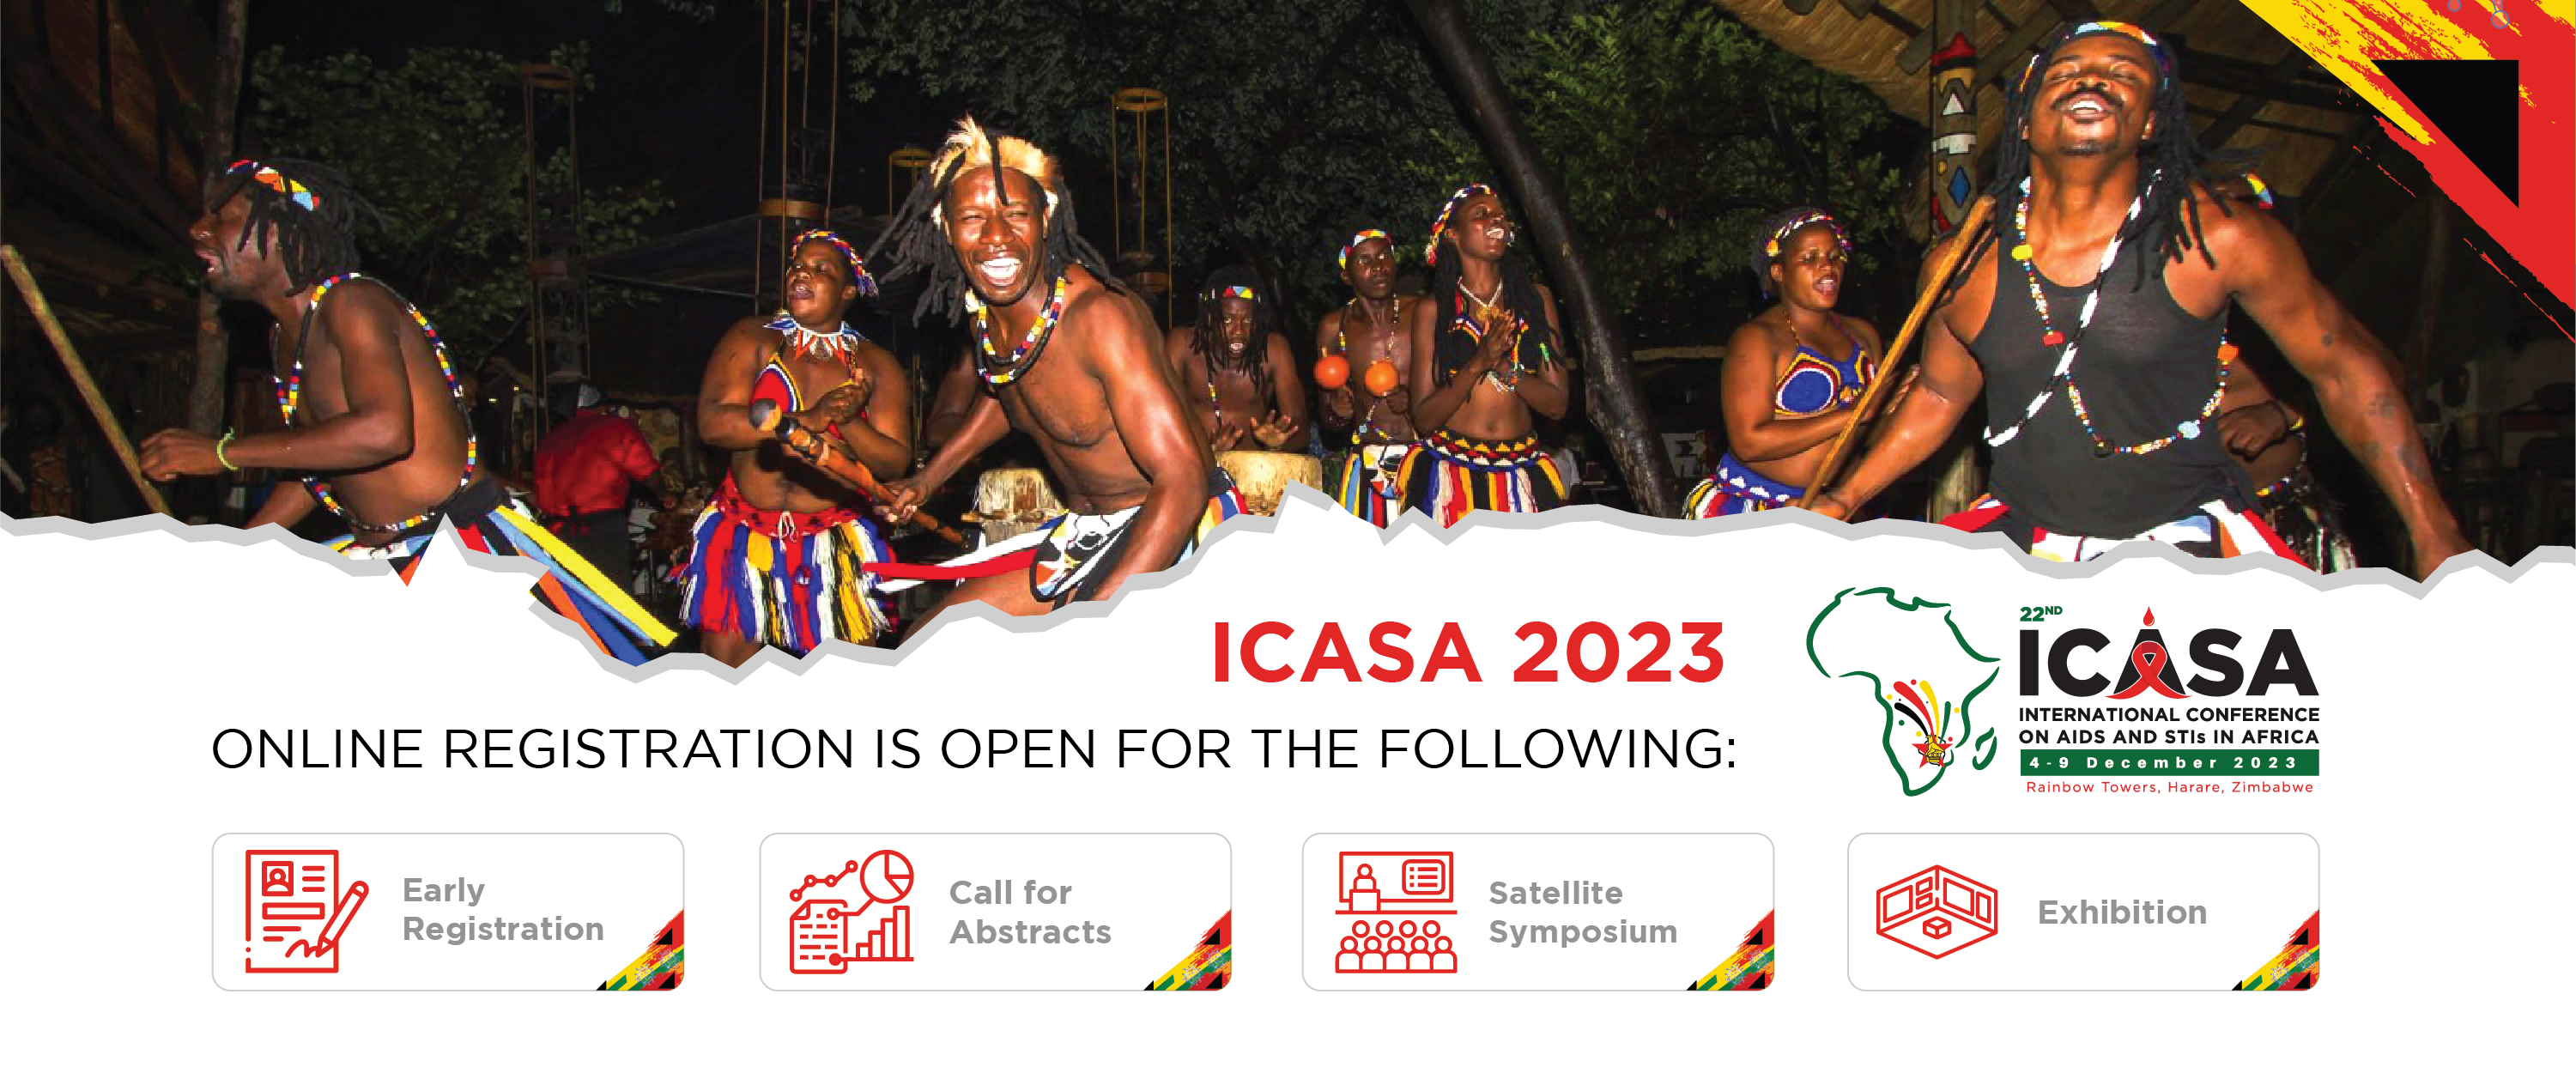 ICASA 2023 Zimbabwe, Online Registration is open